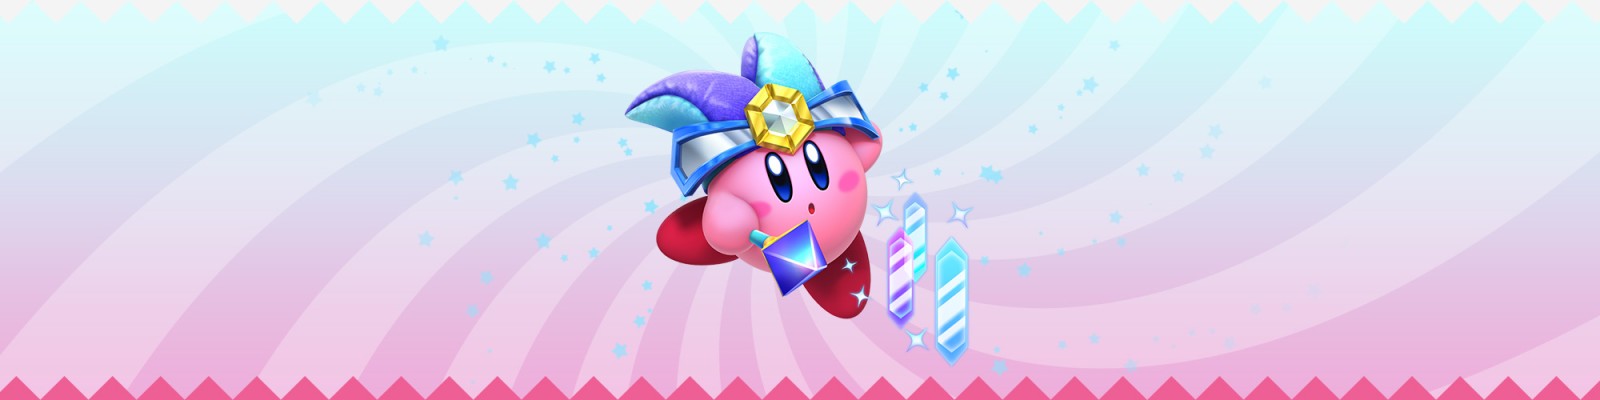 Nintendo promete variedade de projetos para os 30 anos de Kirby